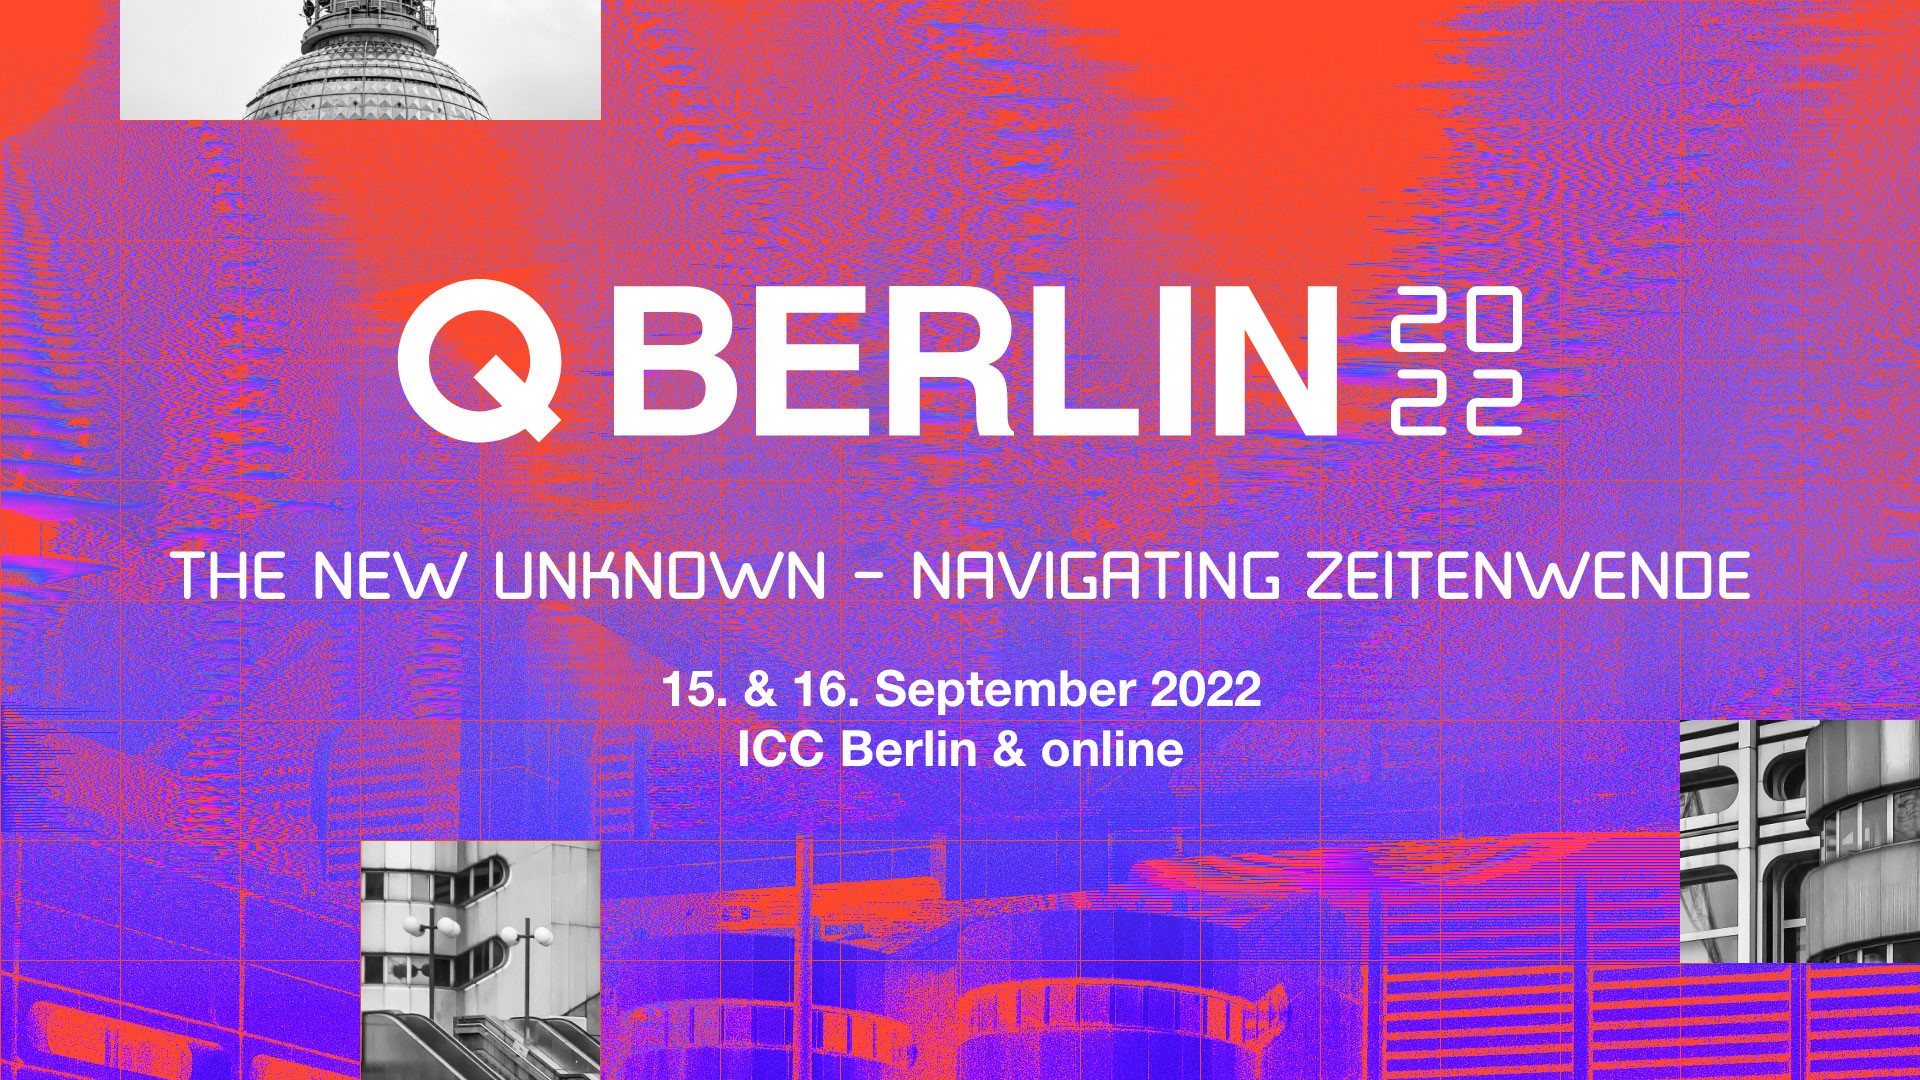 Q Berlin 2022: The New Unknown – Navigating Zeitenwende